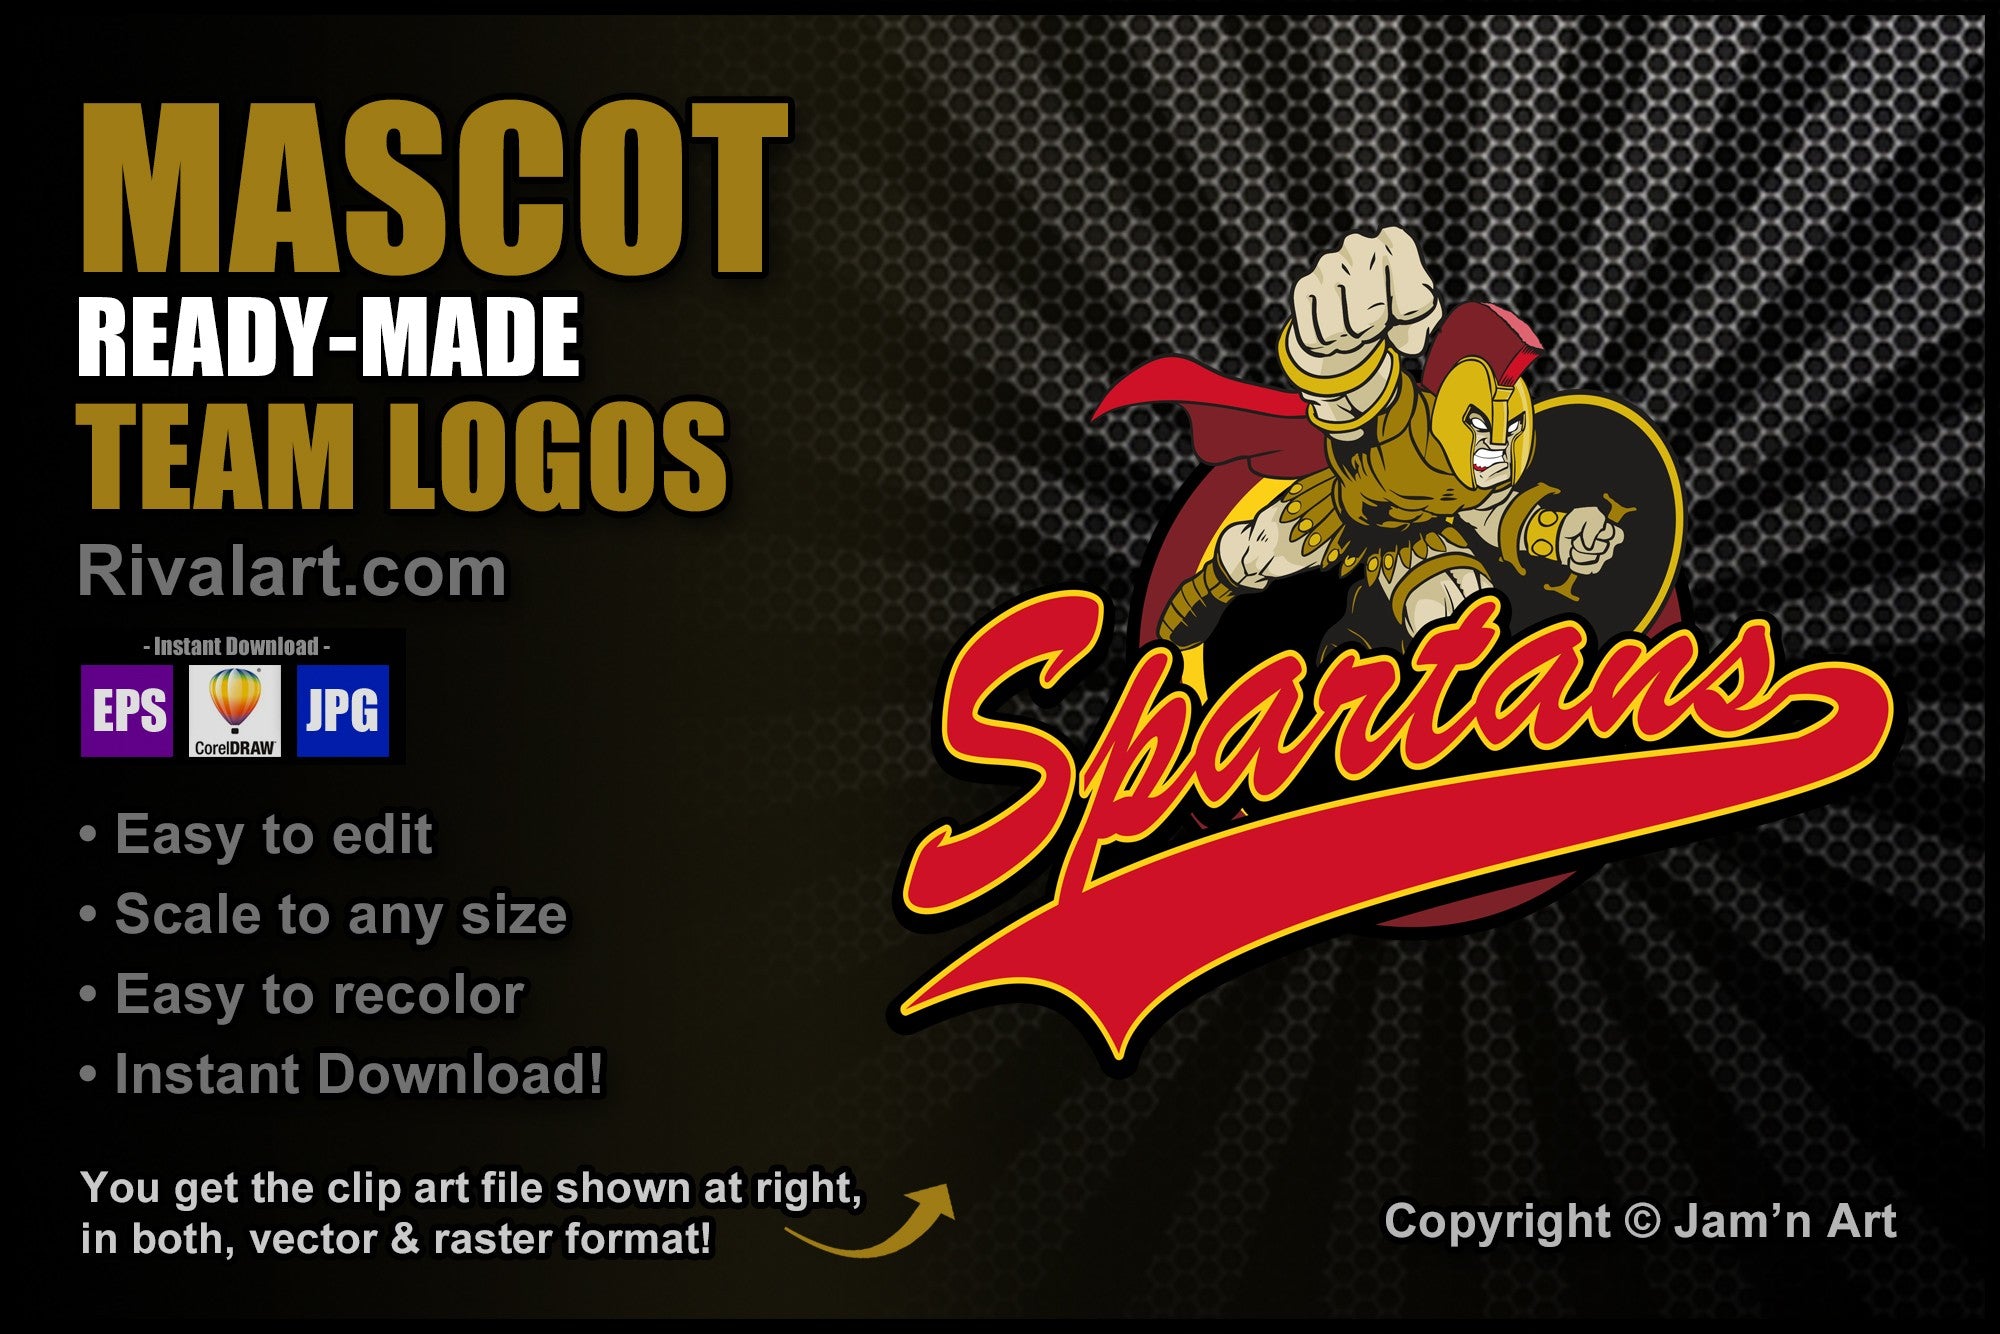 spartan logos clip art